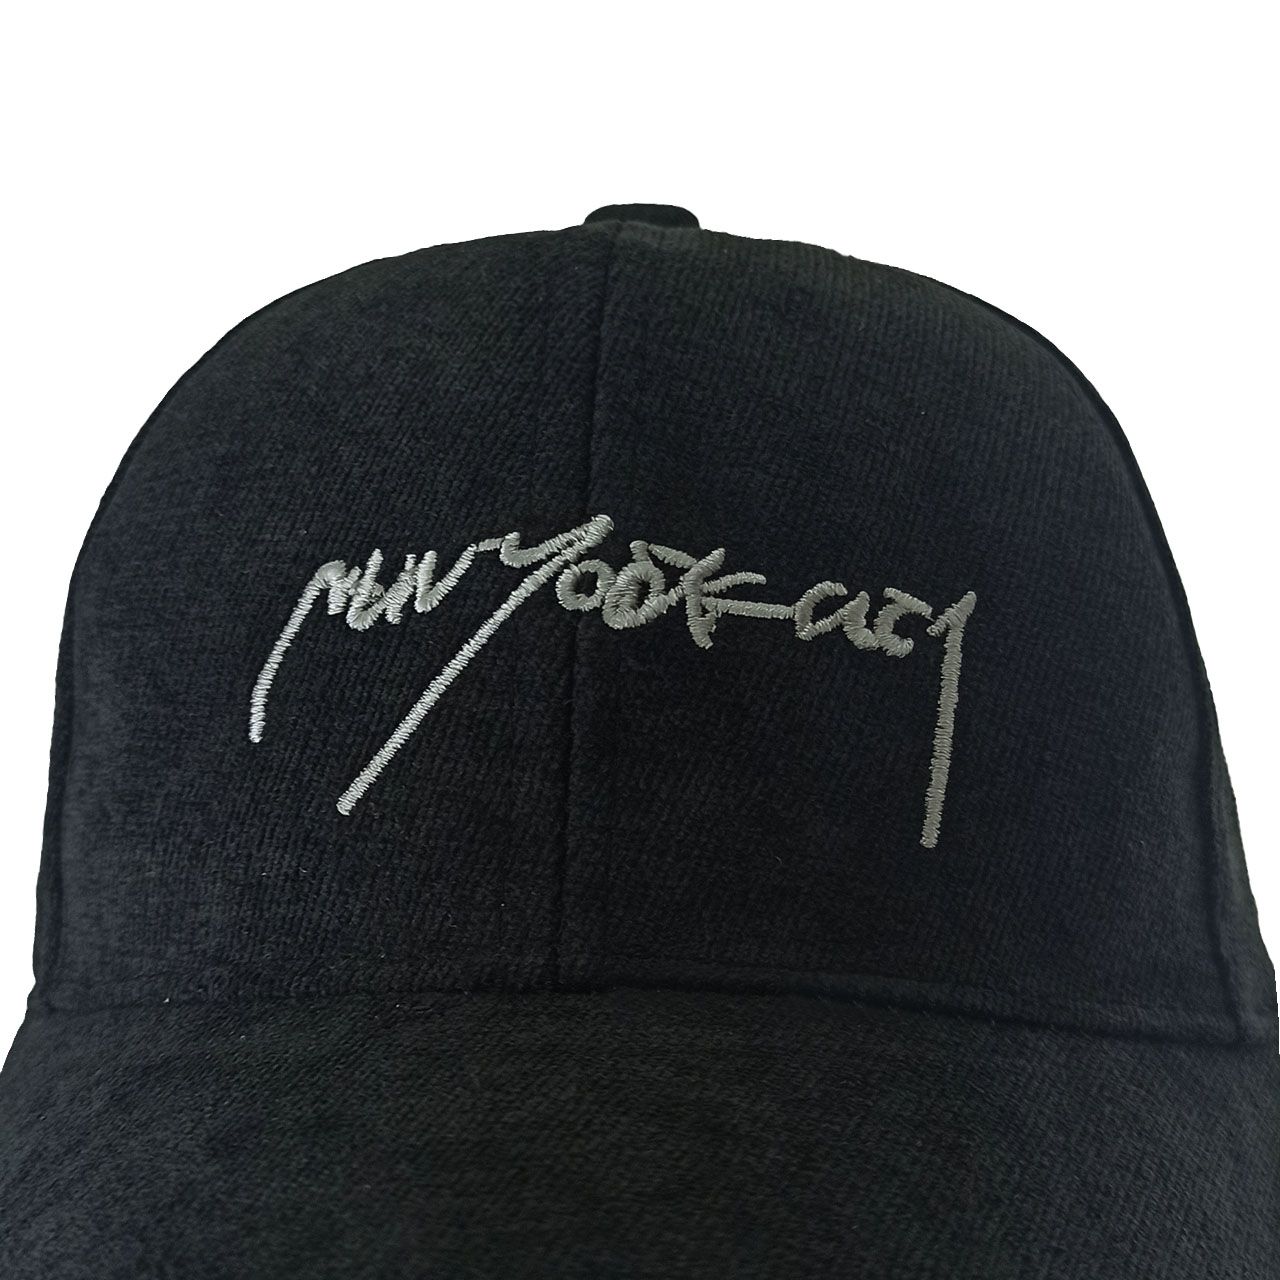 کلاه کپ کد MN320 -  - 3